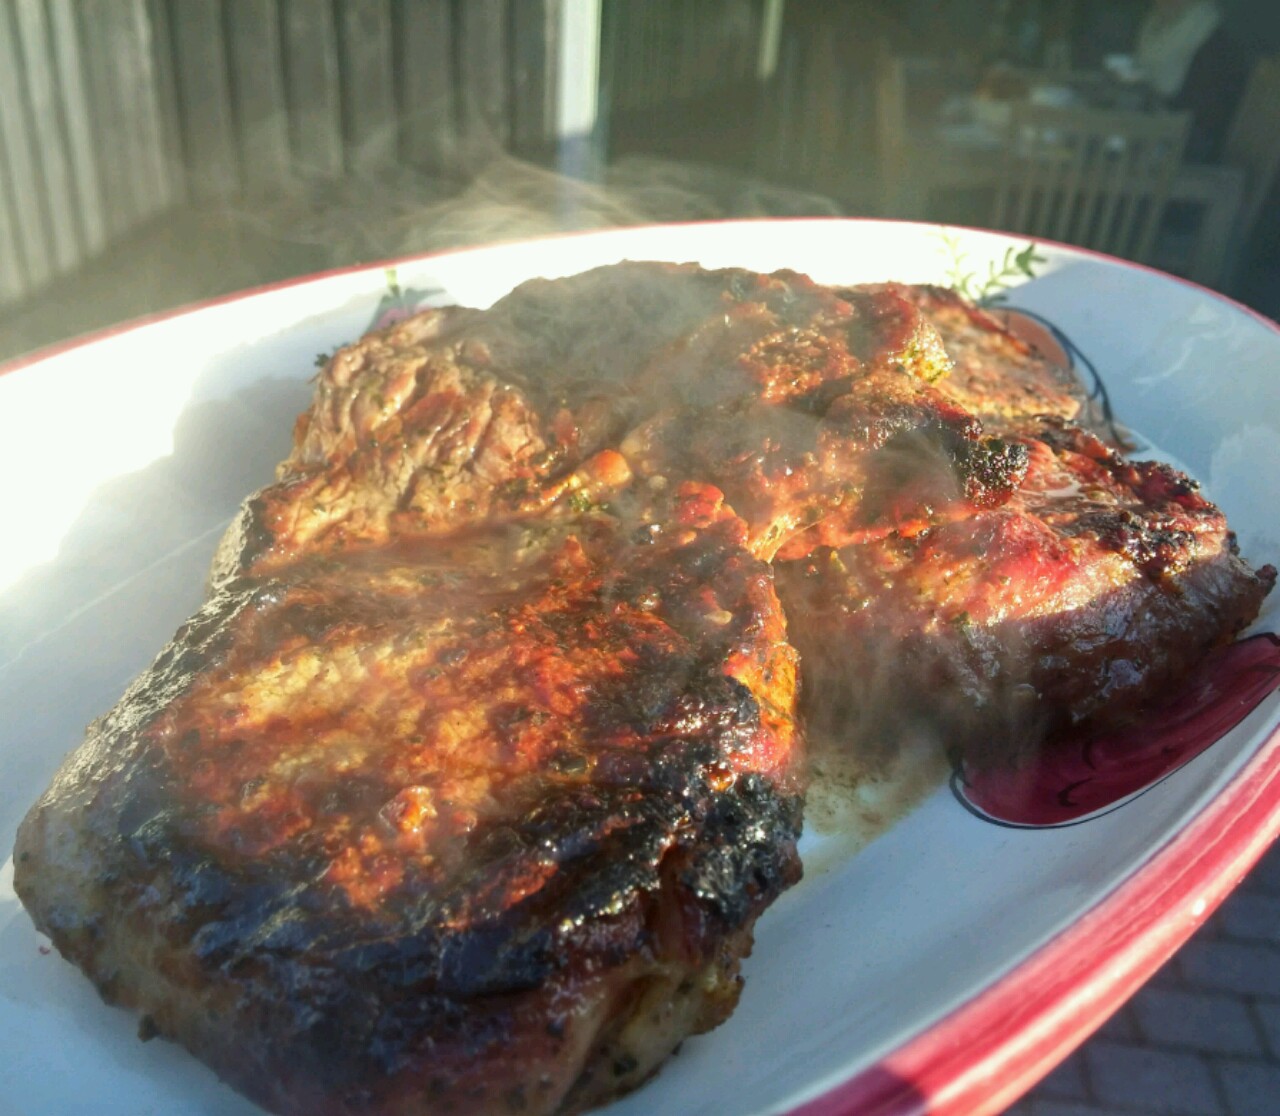 Das Rib-Eye Steak sieht super aus, aber ob es auch schmeckt?